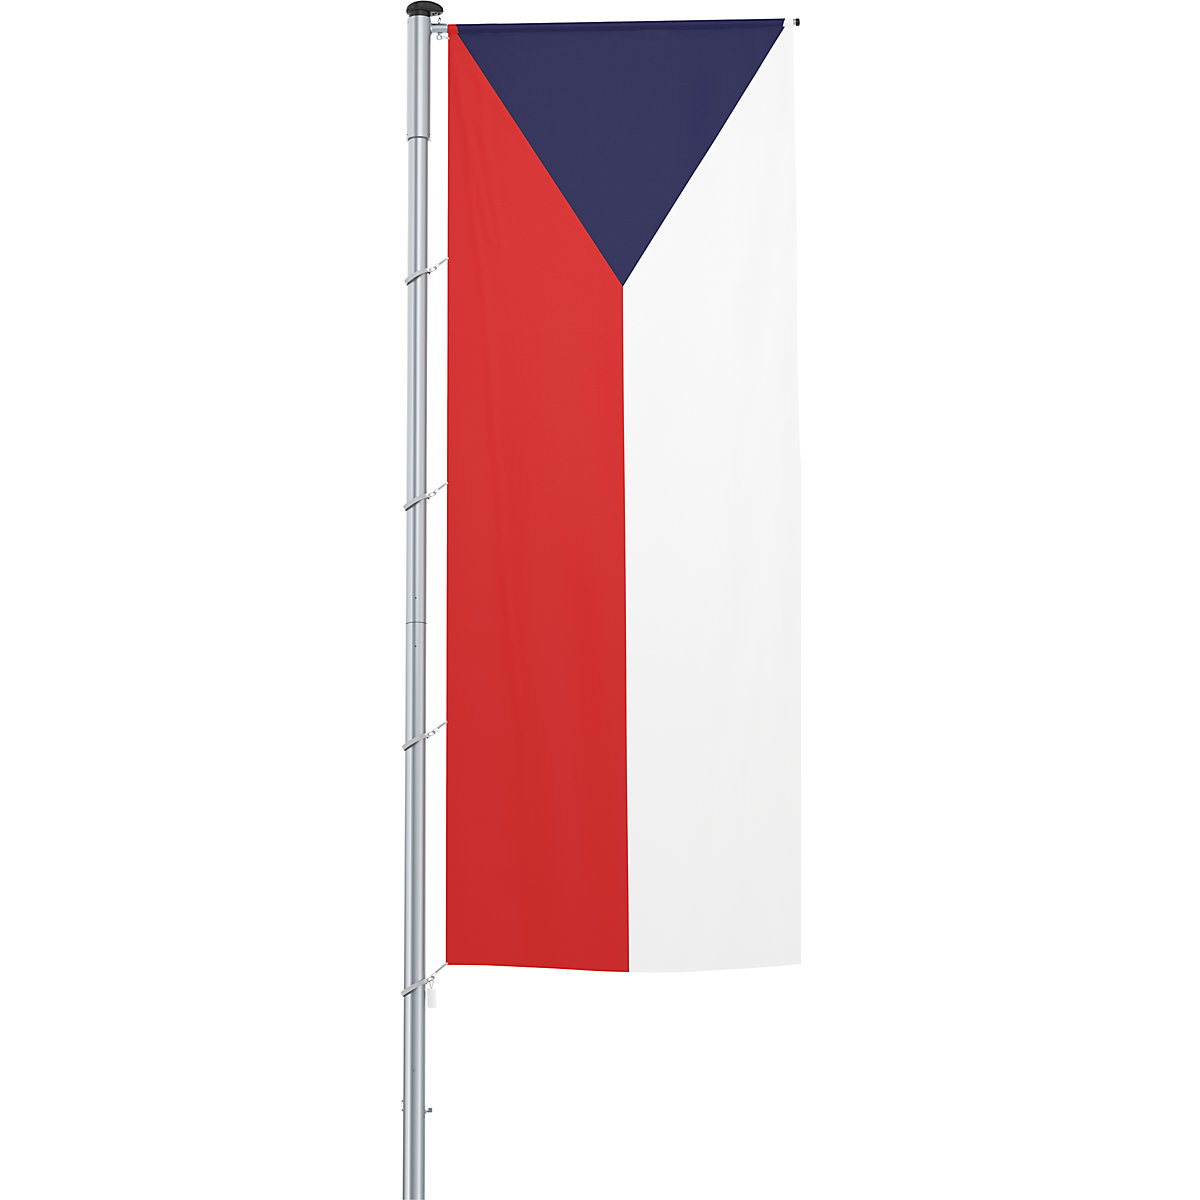 Steag pentru braț/drapel național – Mannus, format 1,2 x 3 m, Republica Cehă-5